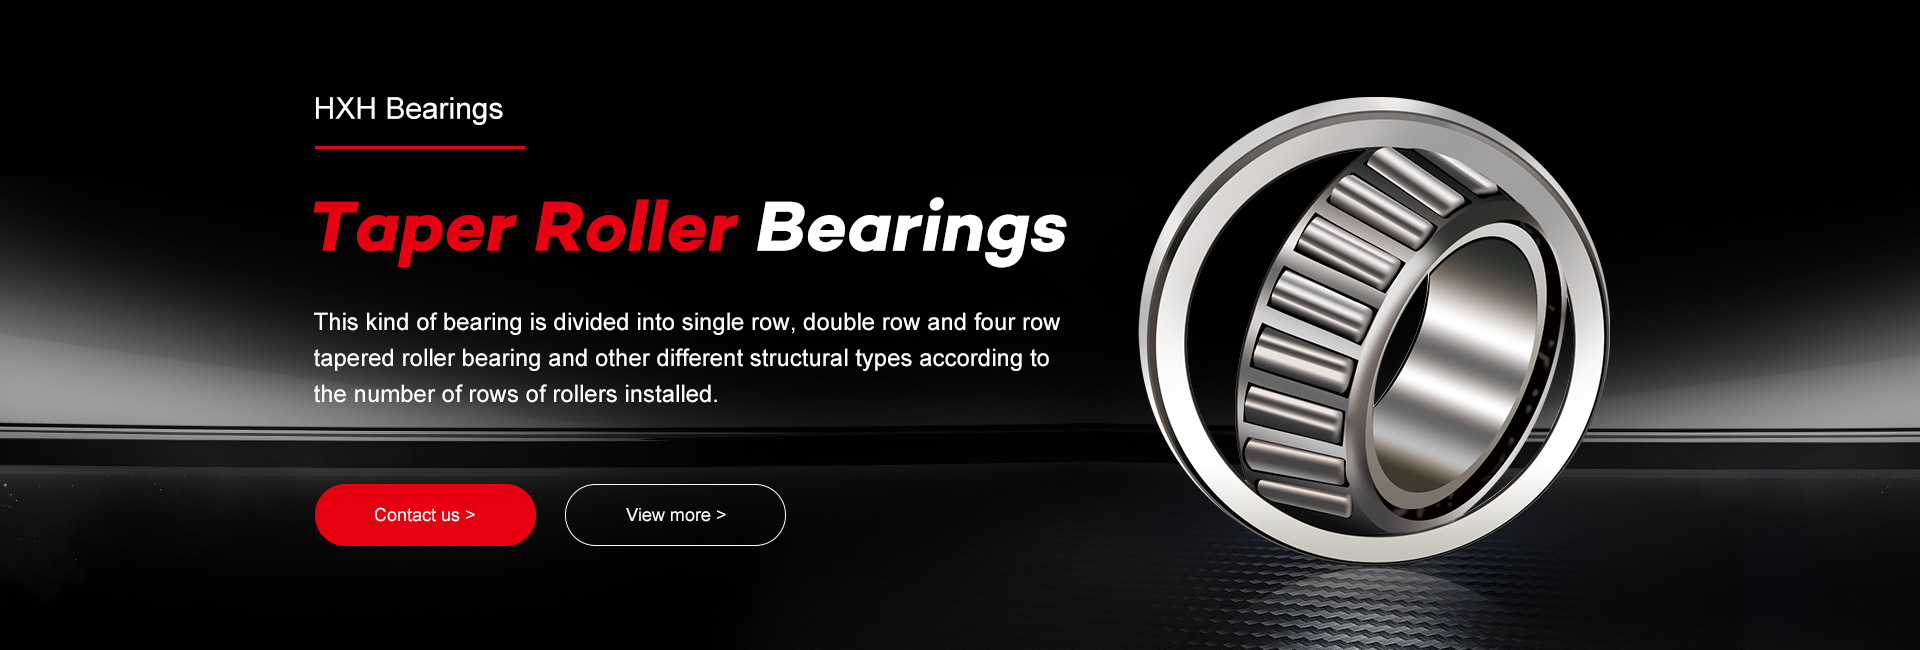 HXHV taper-roller bearings